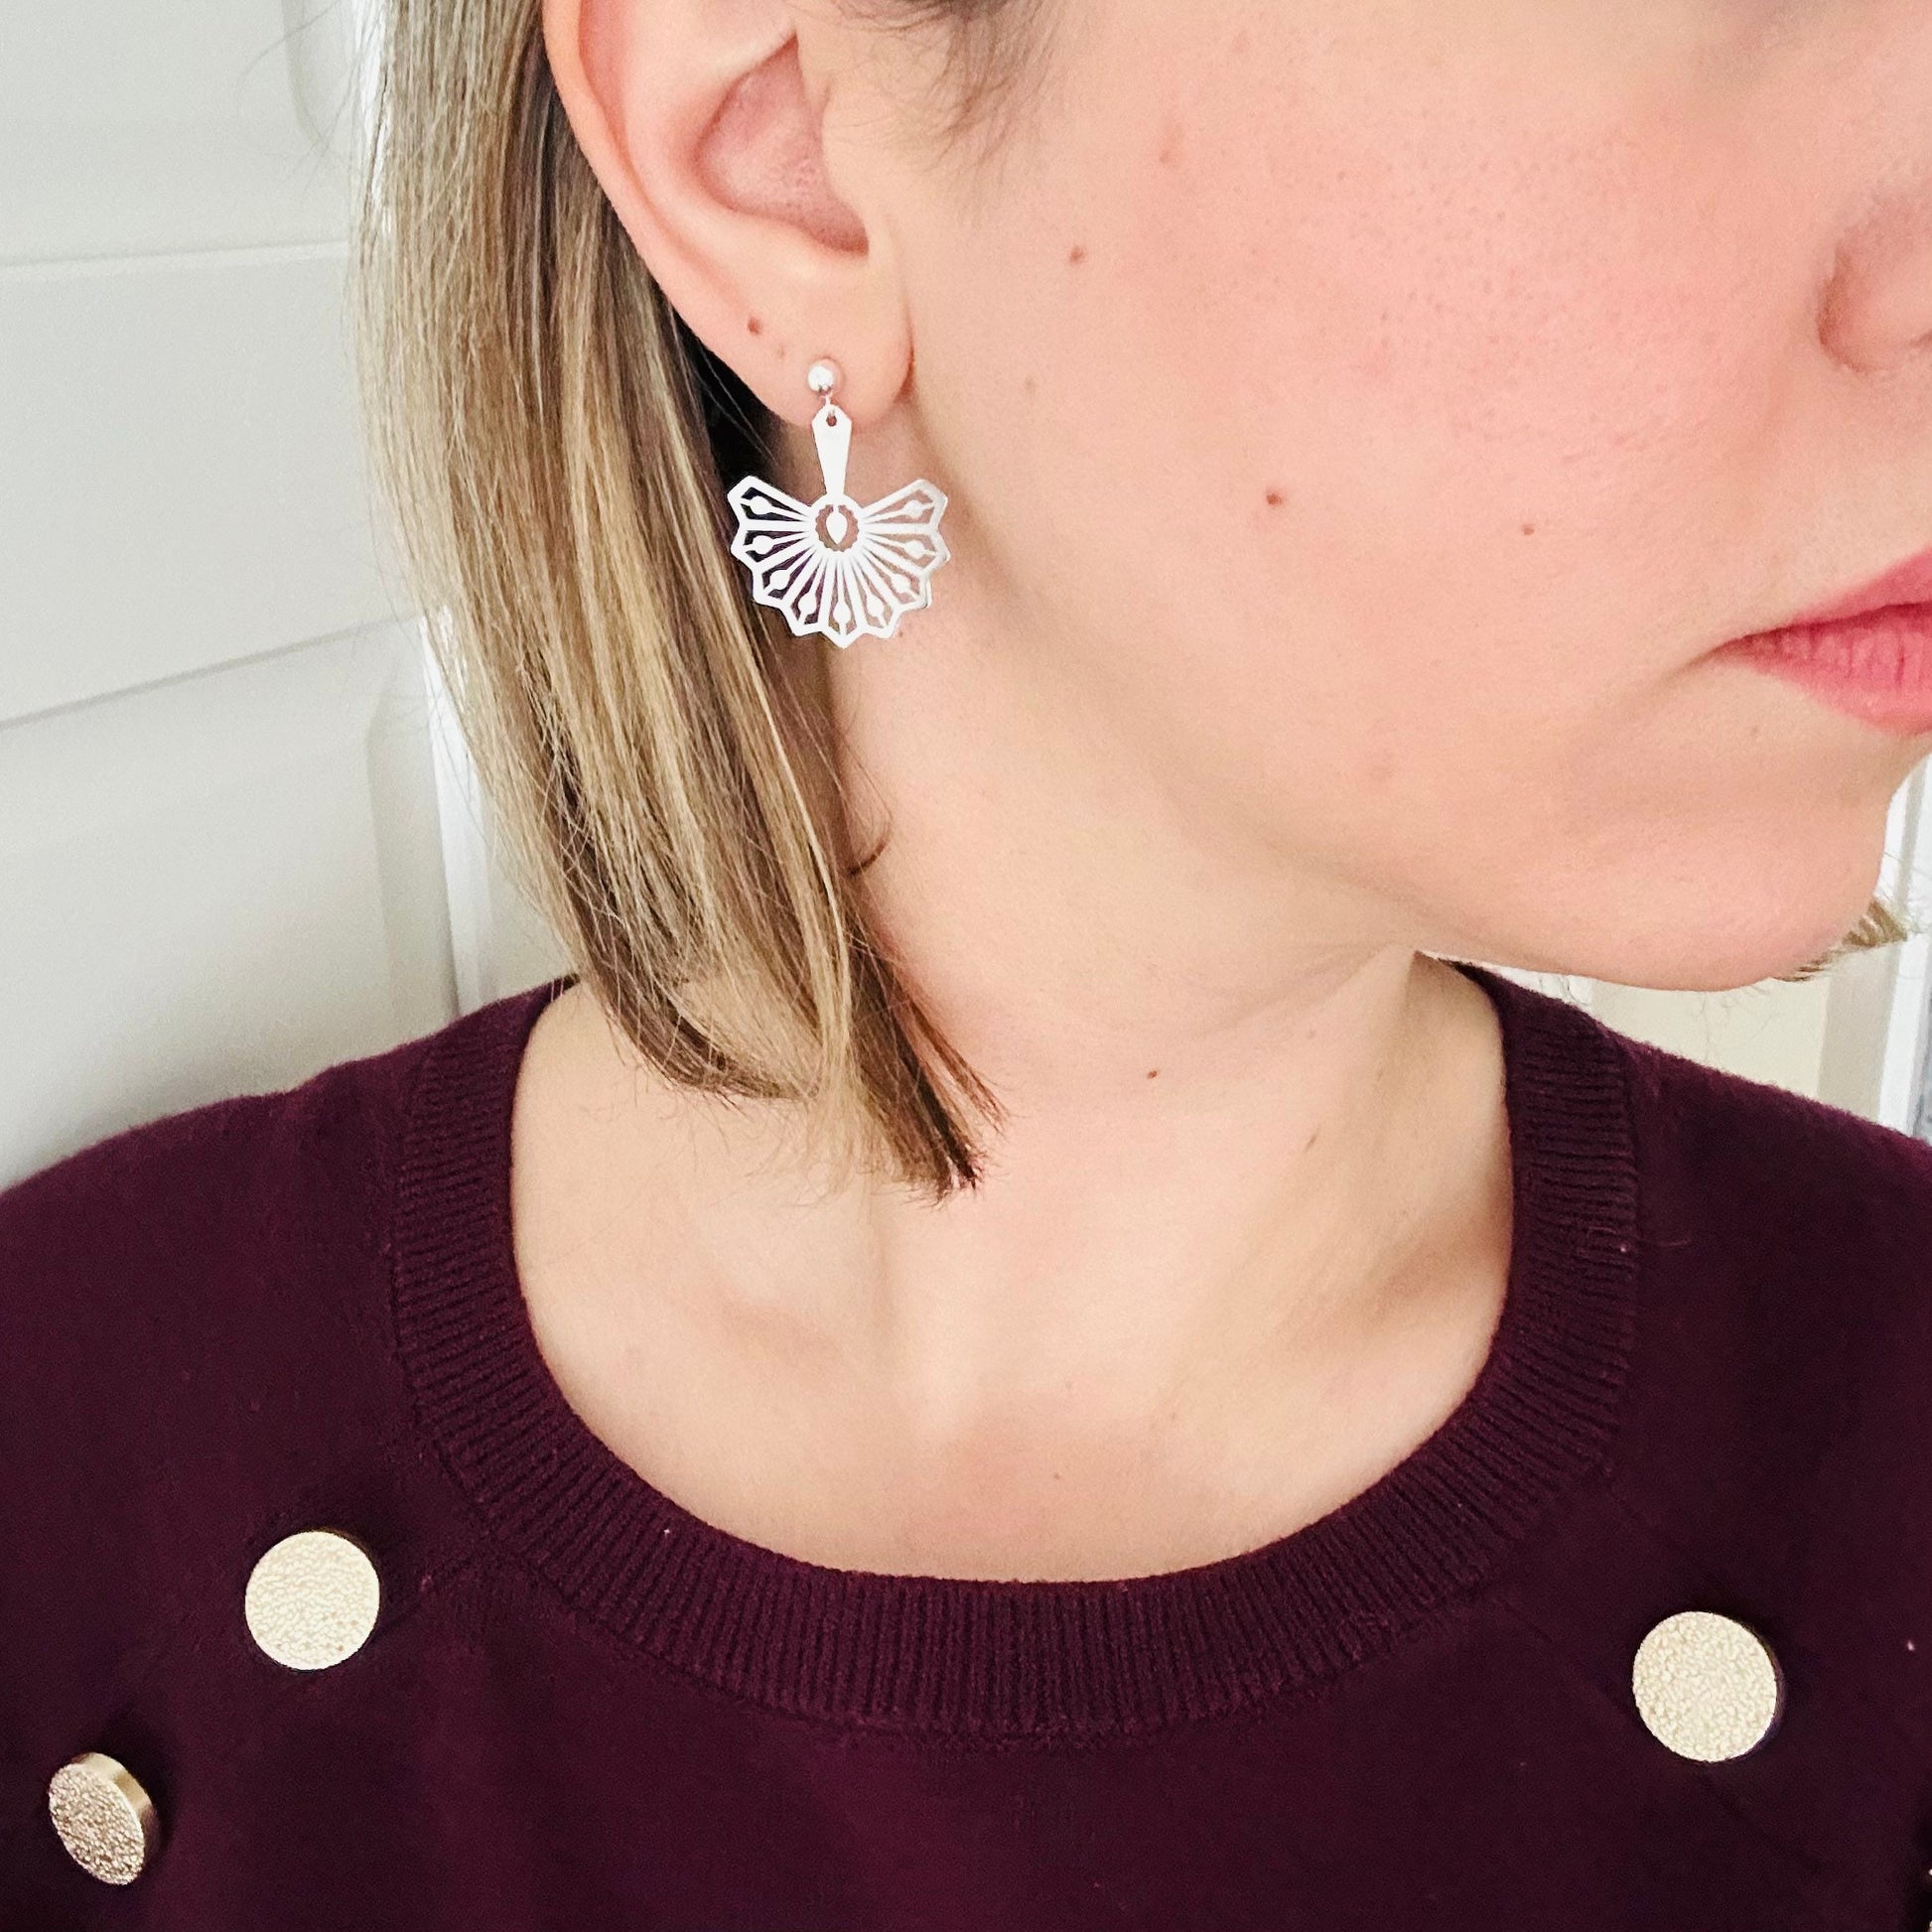 Fancy Sterling Silver Fan Earrings With Ball Studs, Sterling Silver Drop Earrings, Drop Earrings For Women And Men - sjewellery|sara jewellery shop toronto